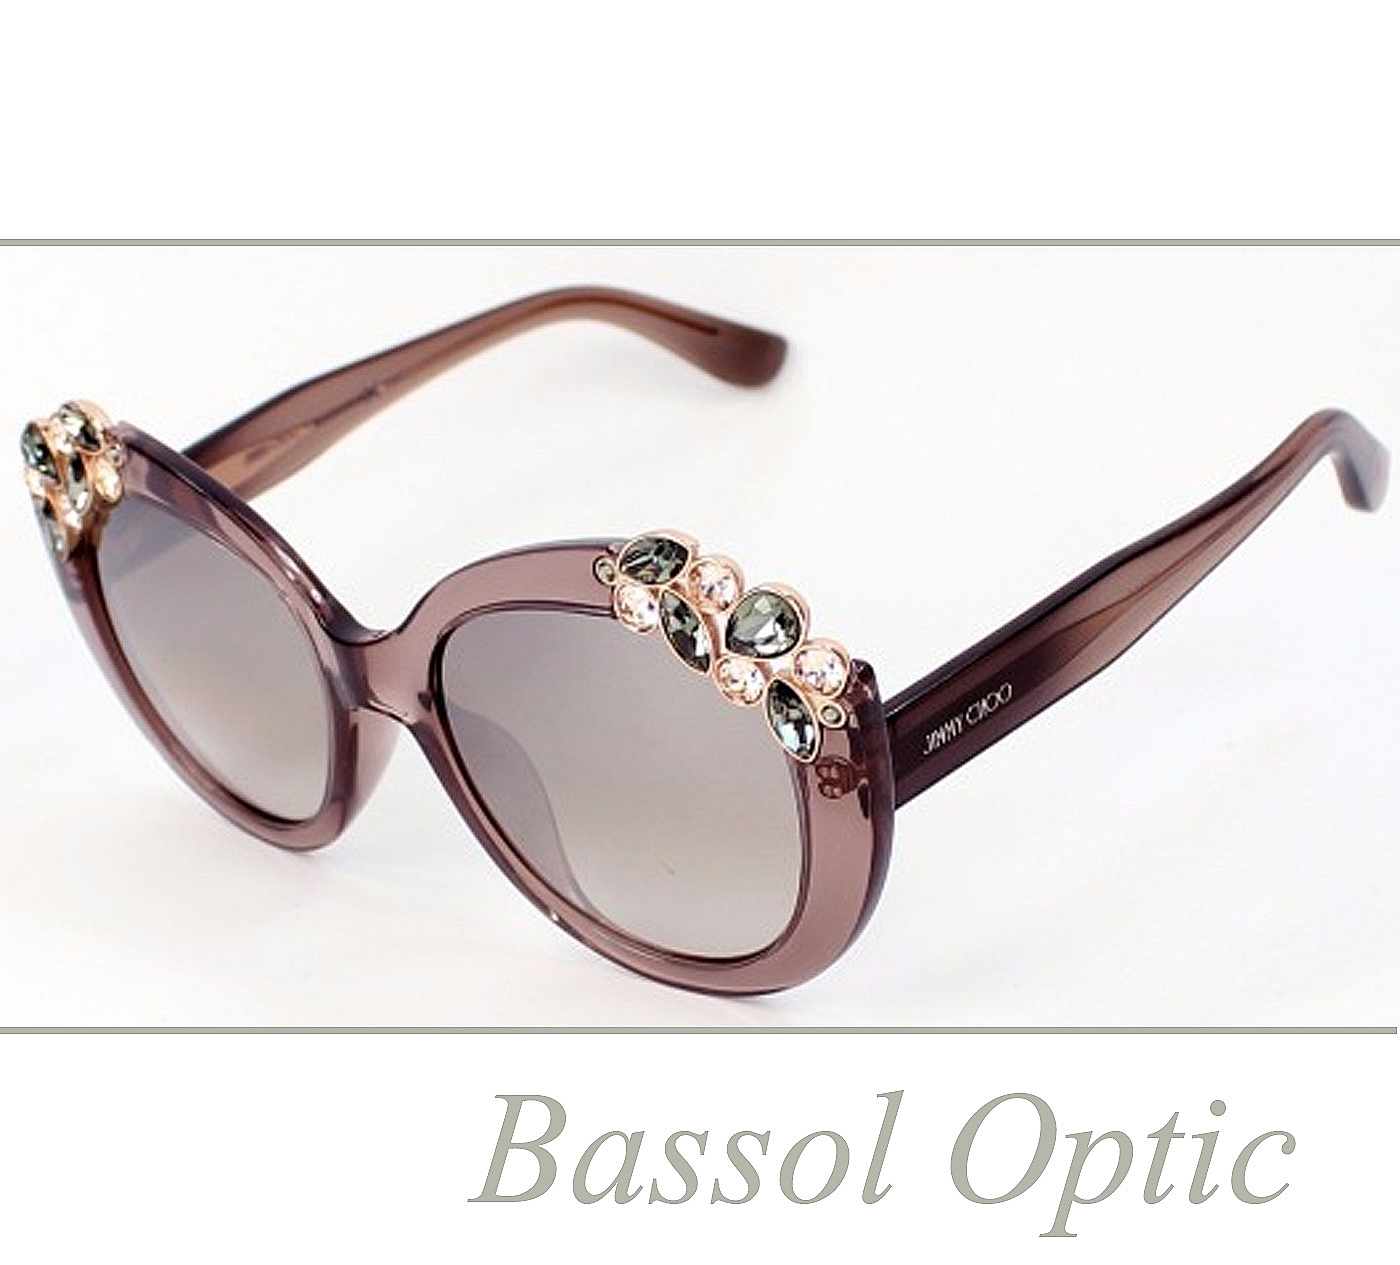 Bassol Optic, siempre a la moda